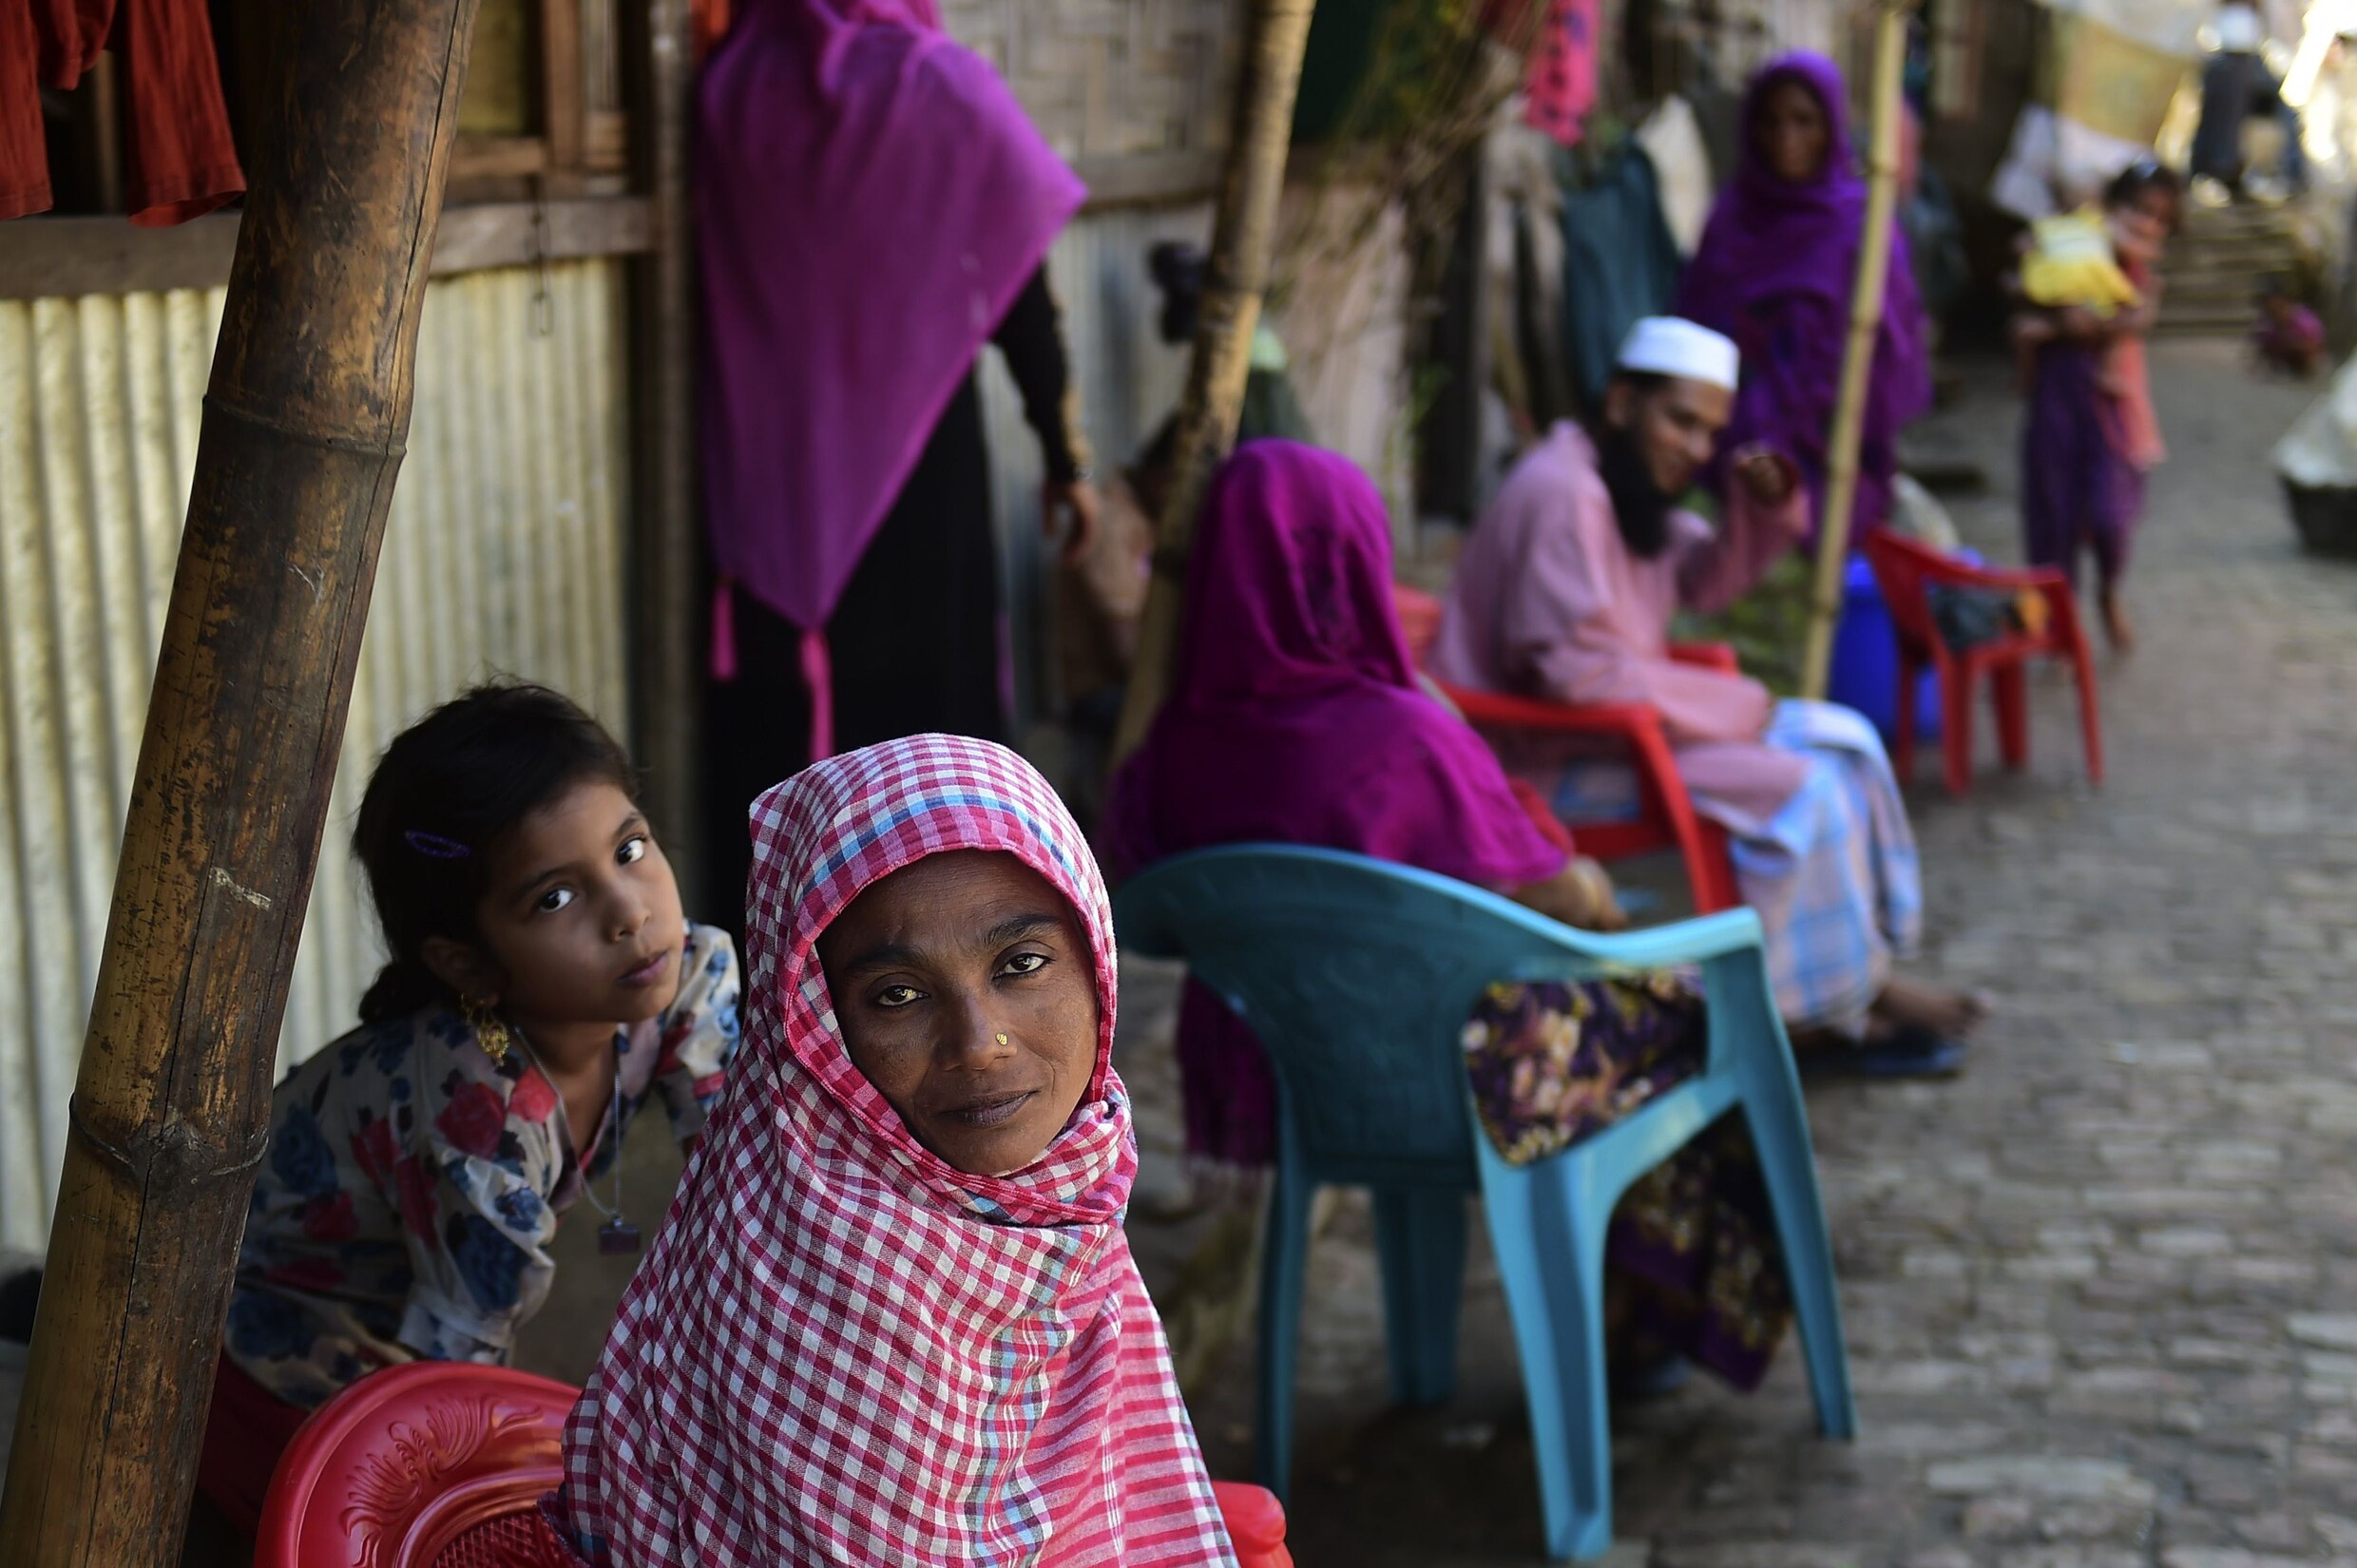 Jonge meisjes die verkracht zijn komen weer in aanmerking voor kindhuwelijk in Bangladesh